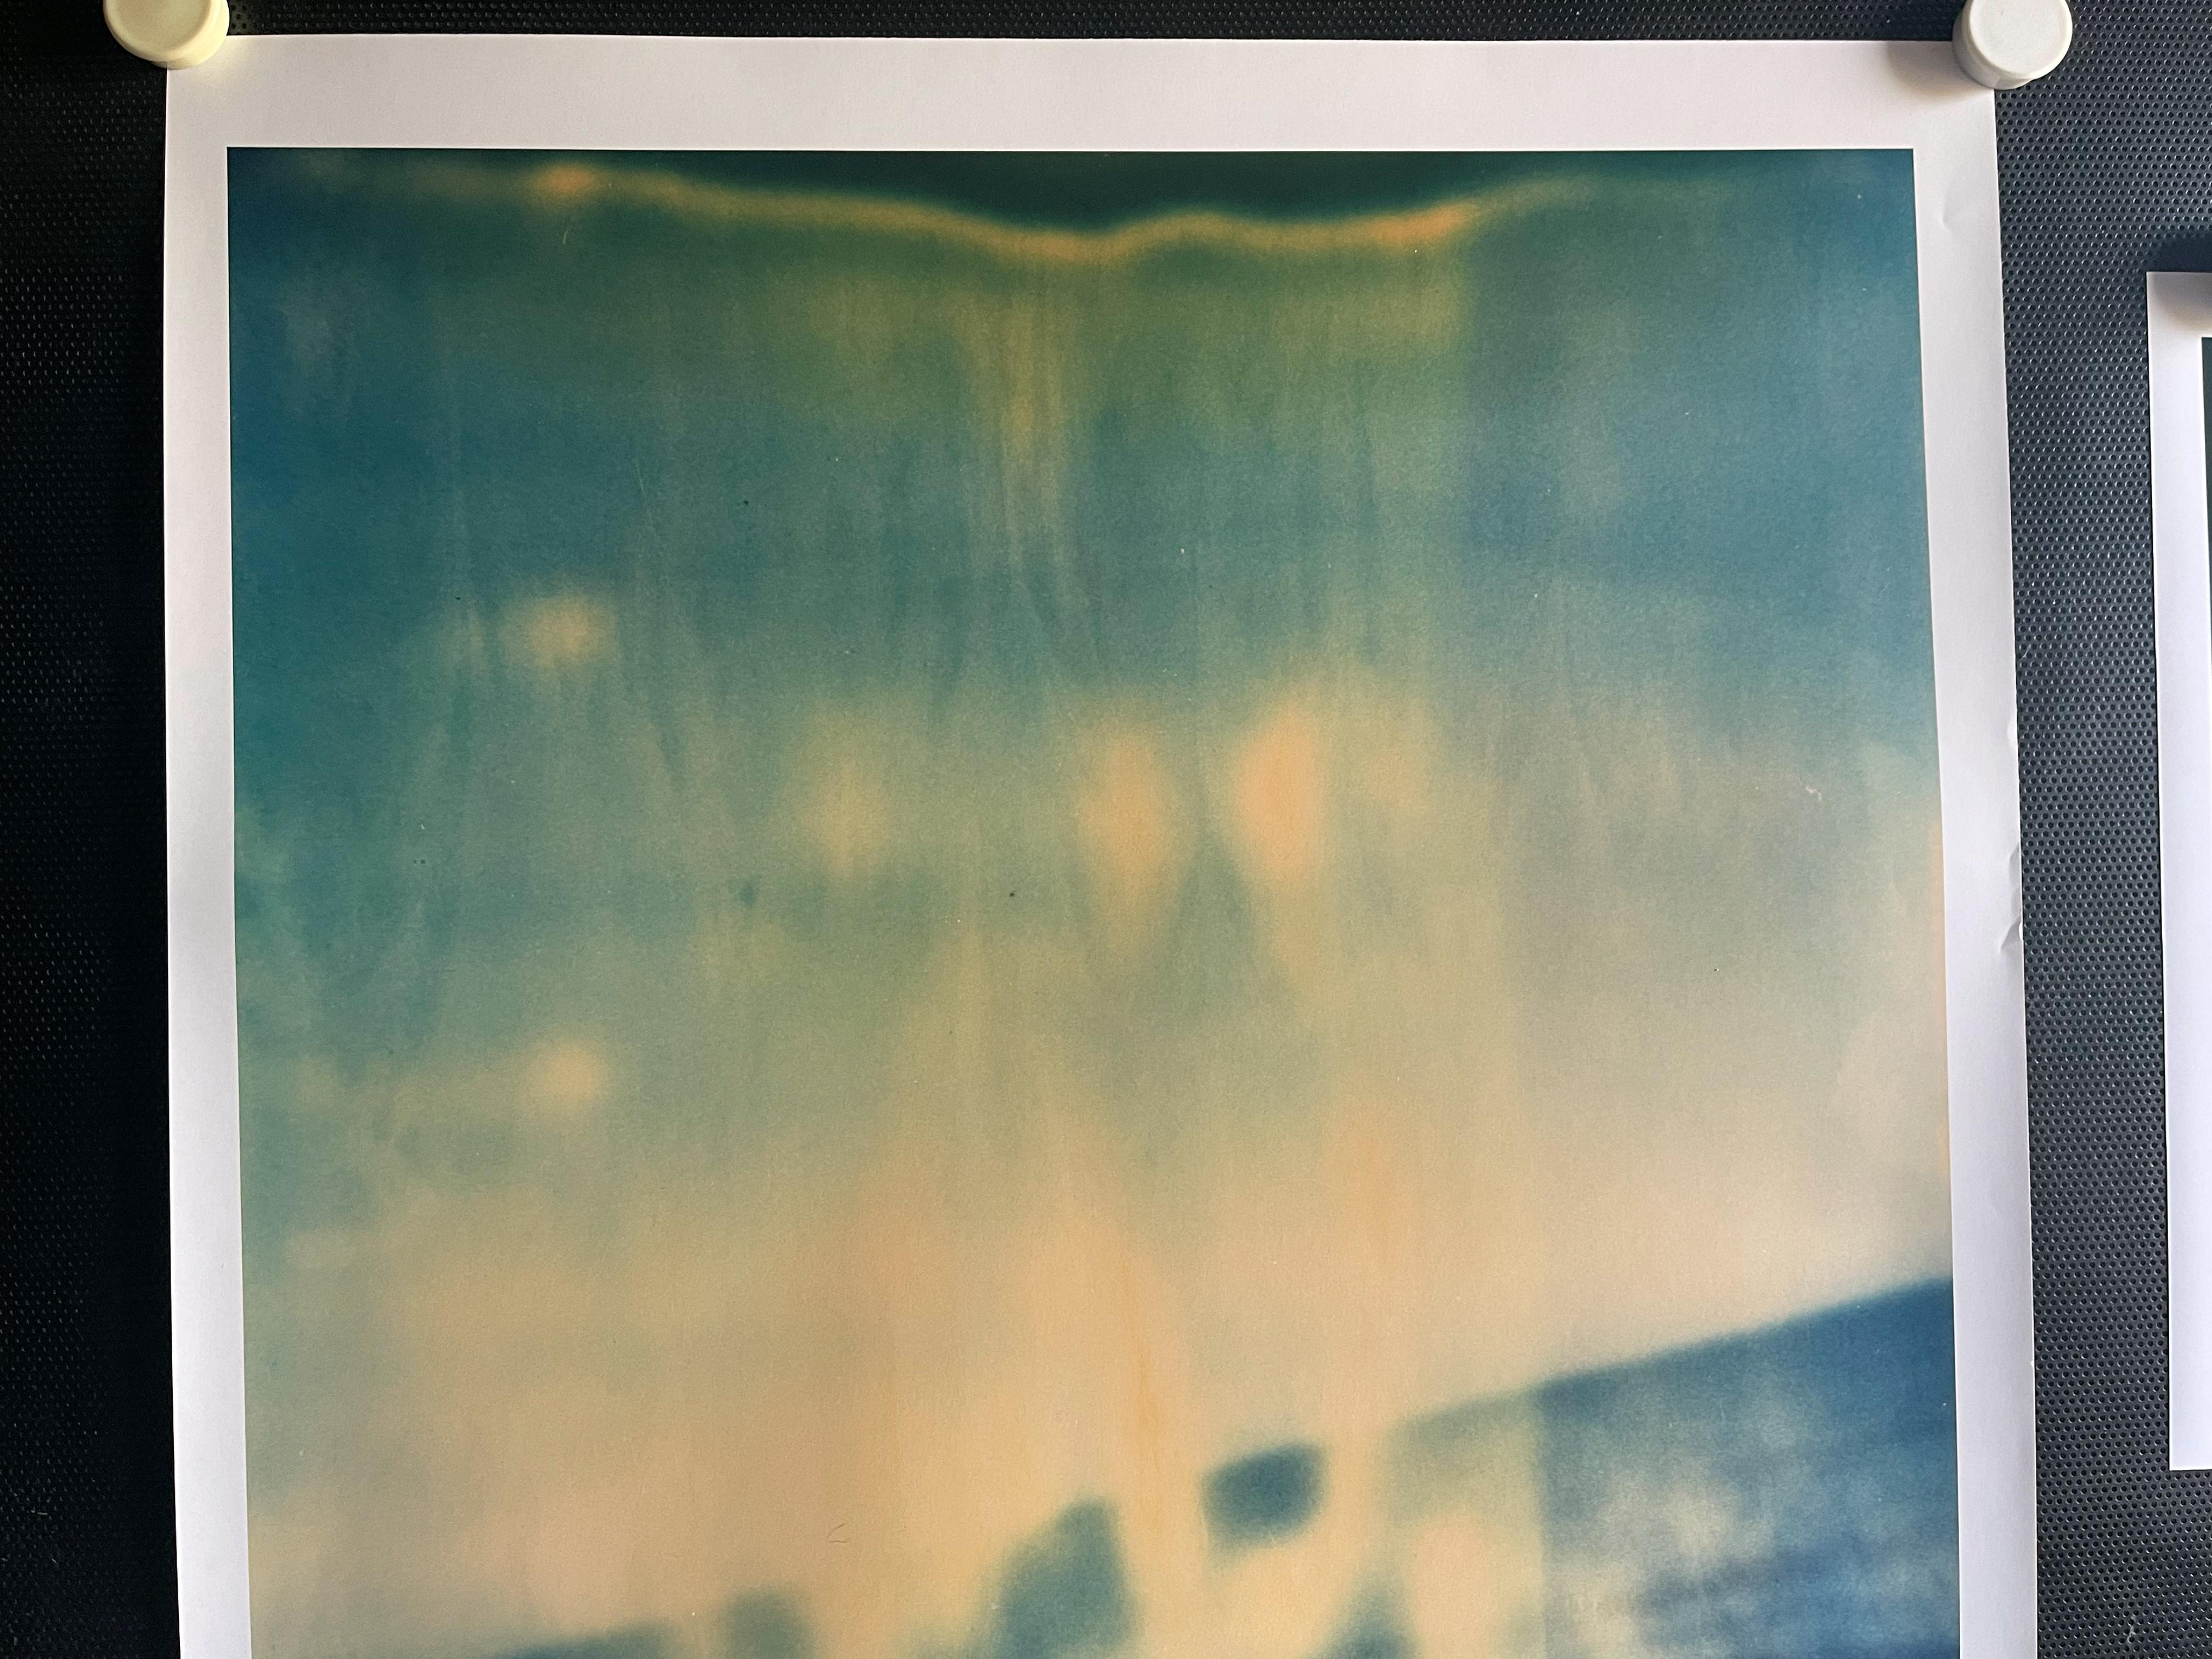 Gekippt (Malibu) - 2004

57x56cm,
Auflage: 10 Exemplare plus 2 Probedrucke. 
Analoger C-Print, von der Künstlerin handgedruckt. auf Fuji Crystal Archive Papier, matte Oberfläche - Vintage By.
Basierend auf dem Original-Polaroid.
Etikett mit